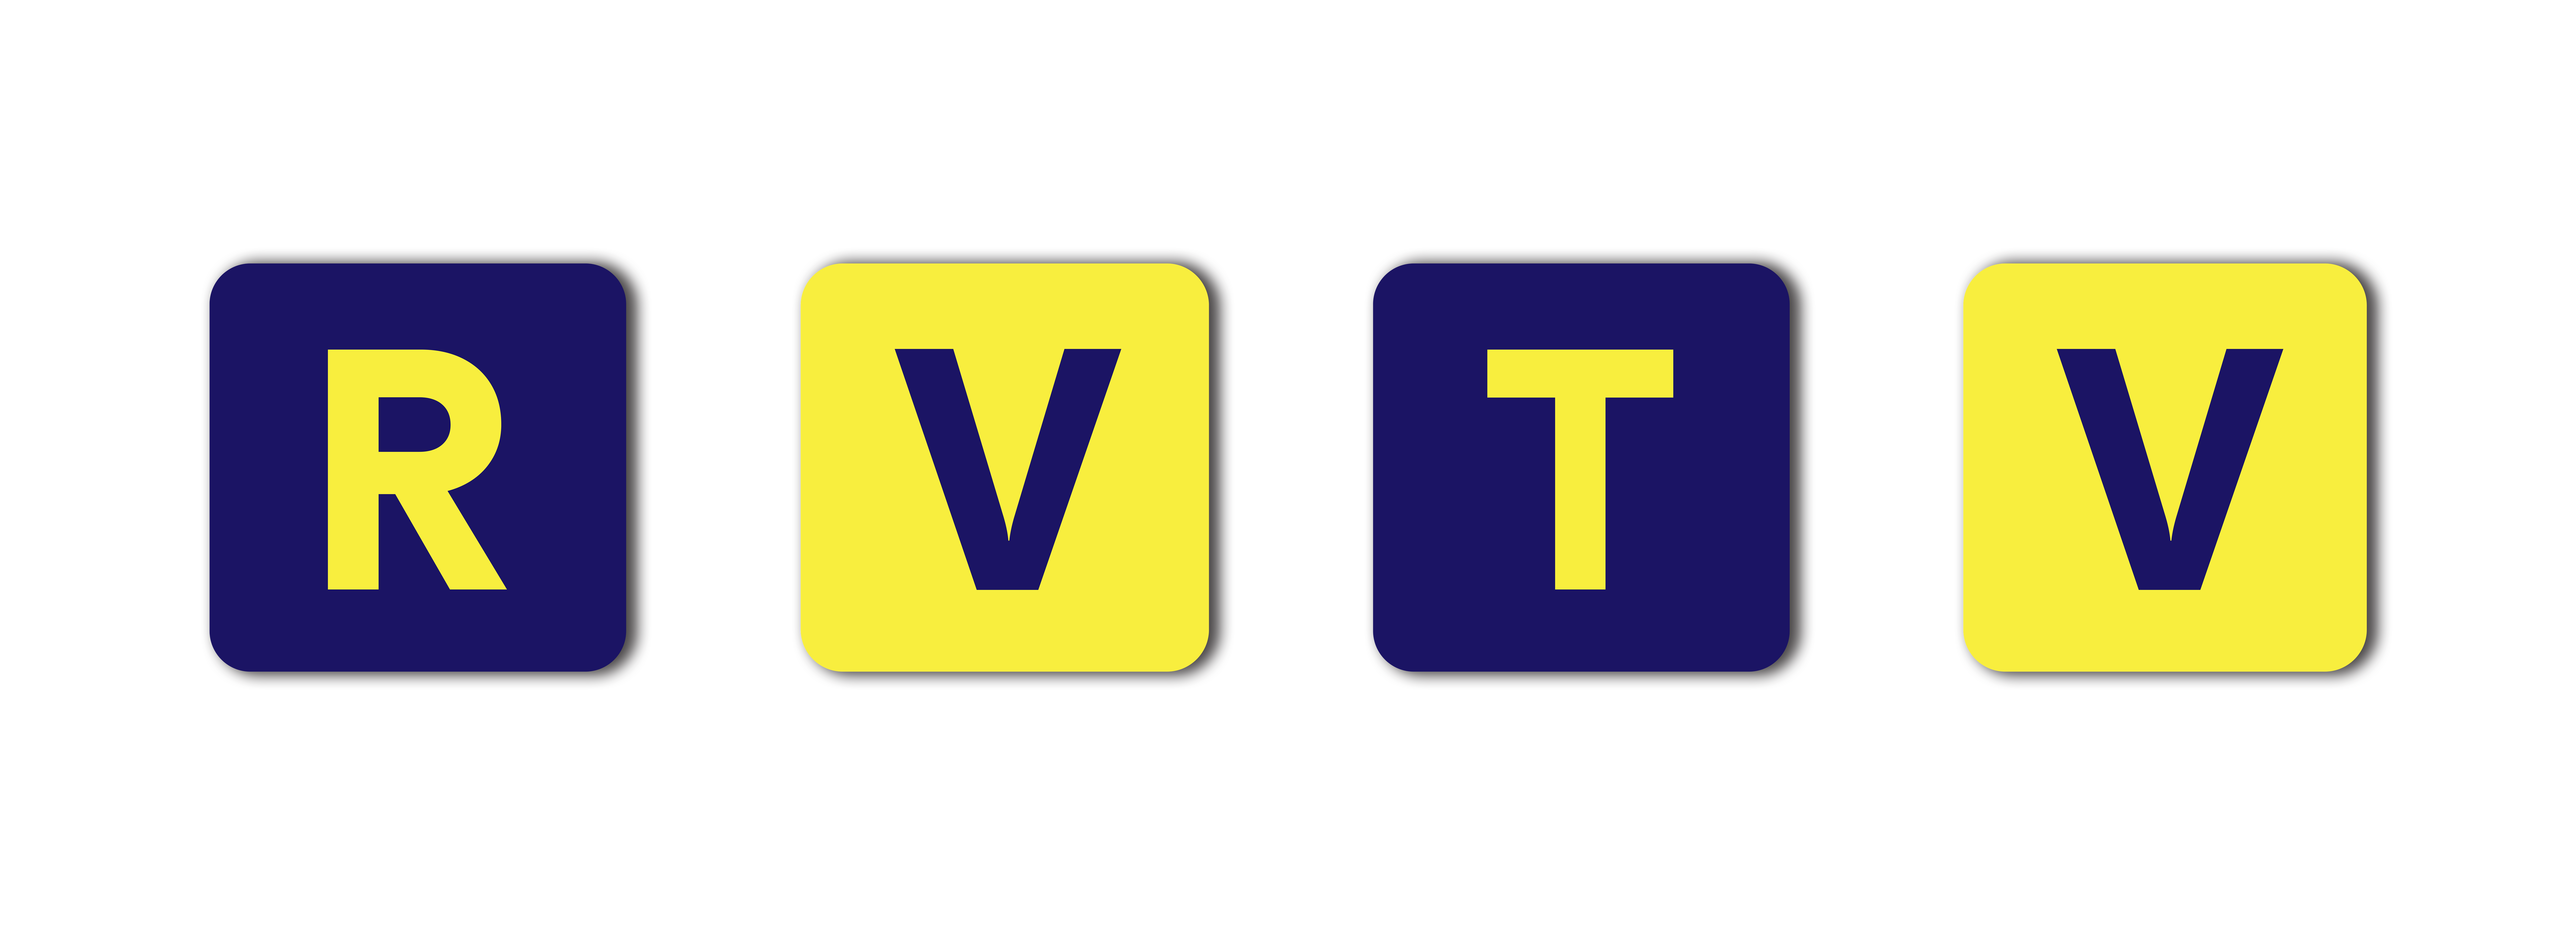 RVTV - Rožňavská televízia